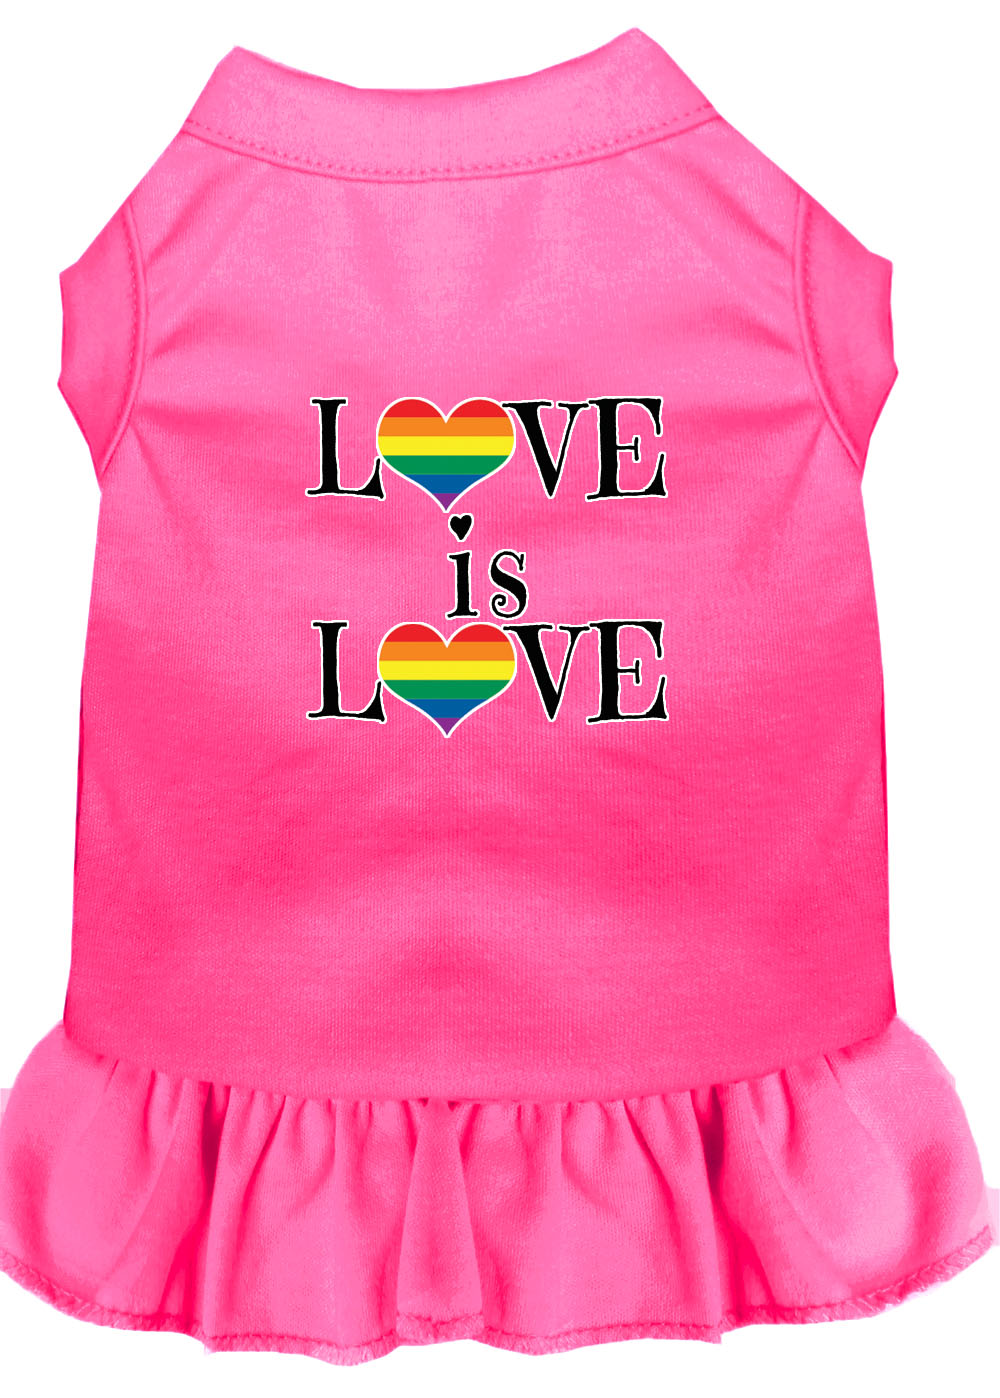 Love is Love Screen Print Dog Dress Bright Pink XL